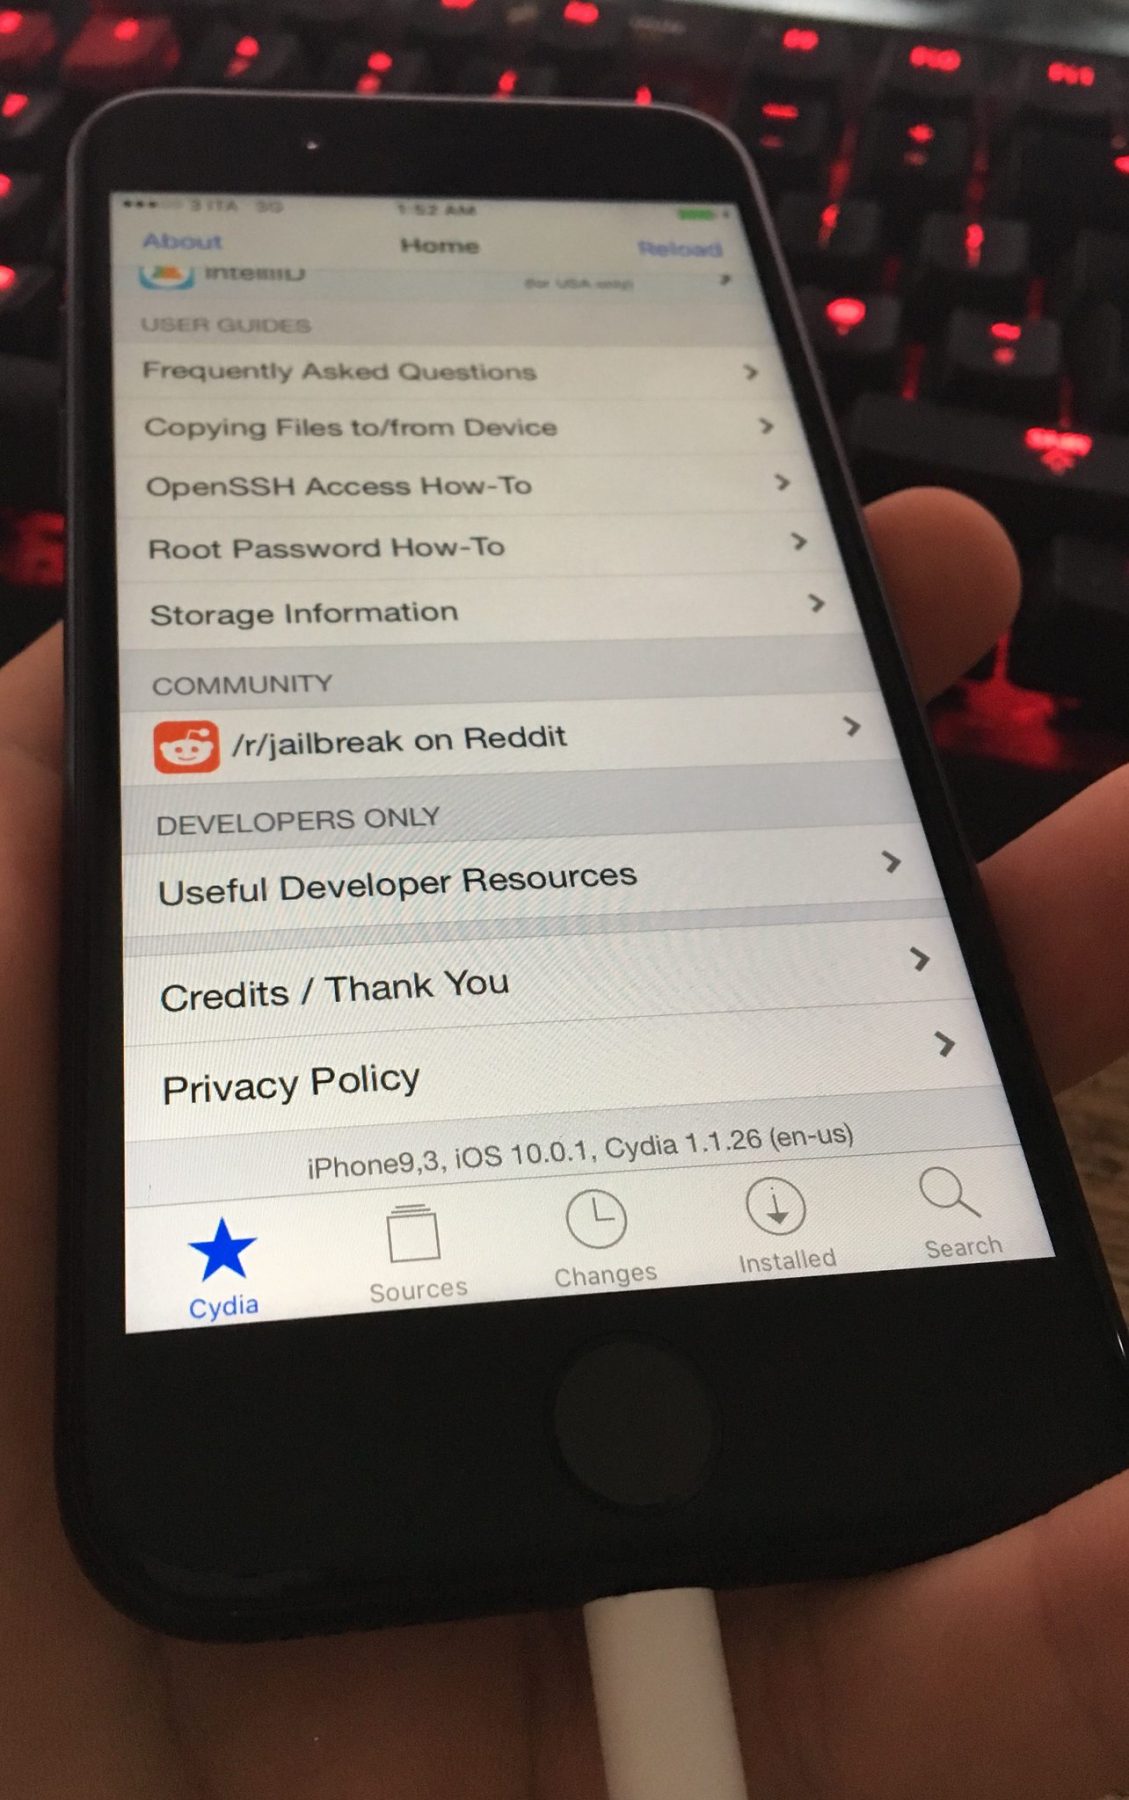 iOS 10 Jailbreak Bounty Raised To $1.5 million